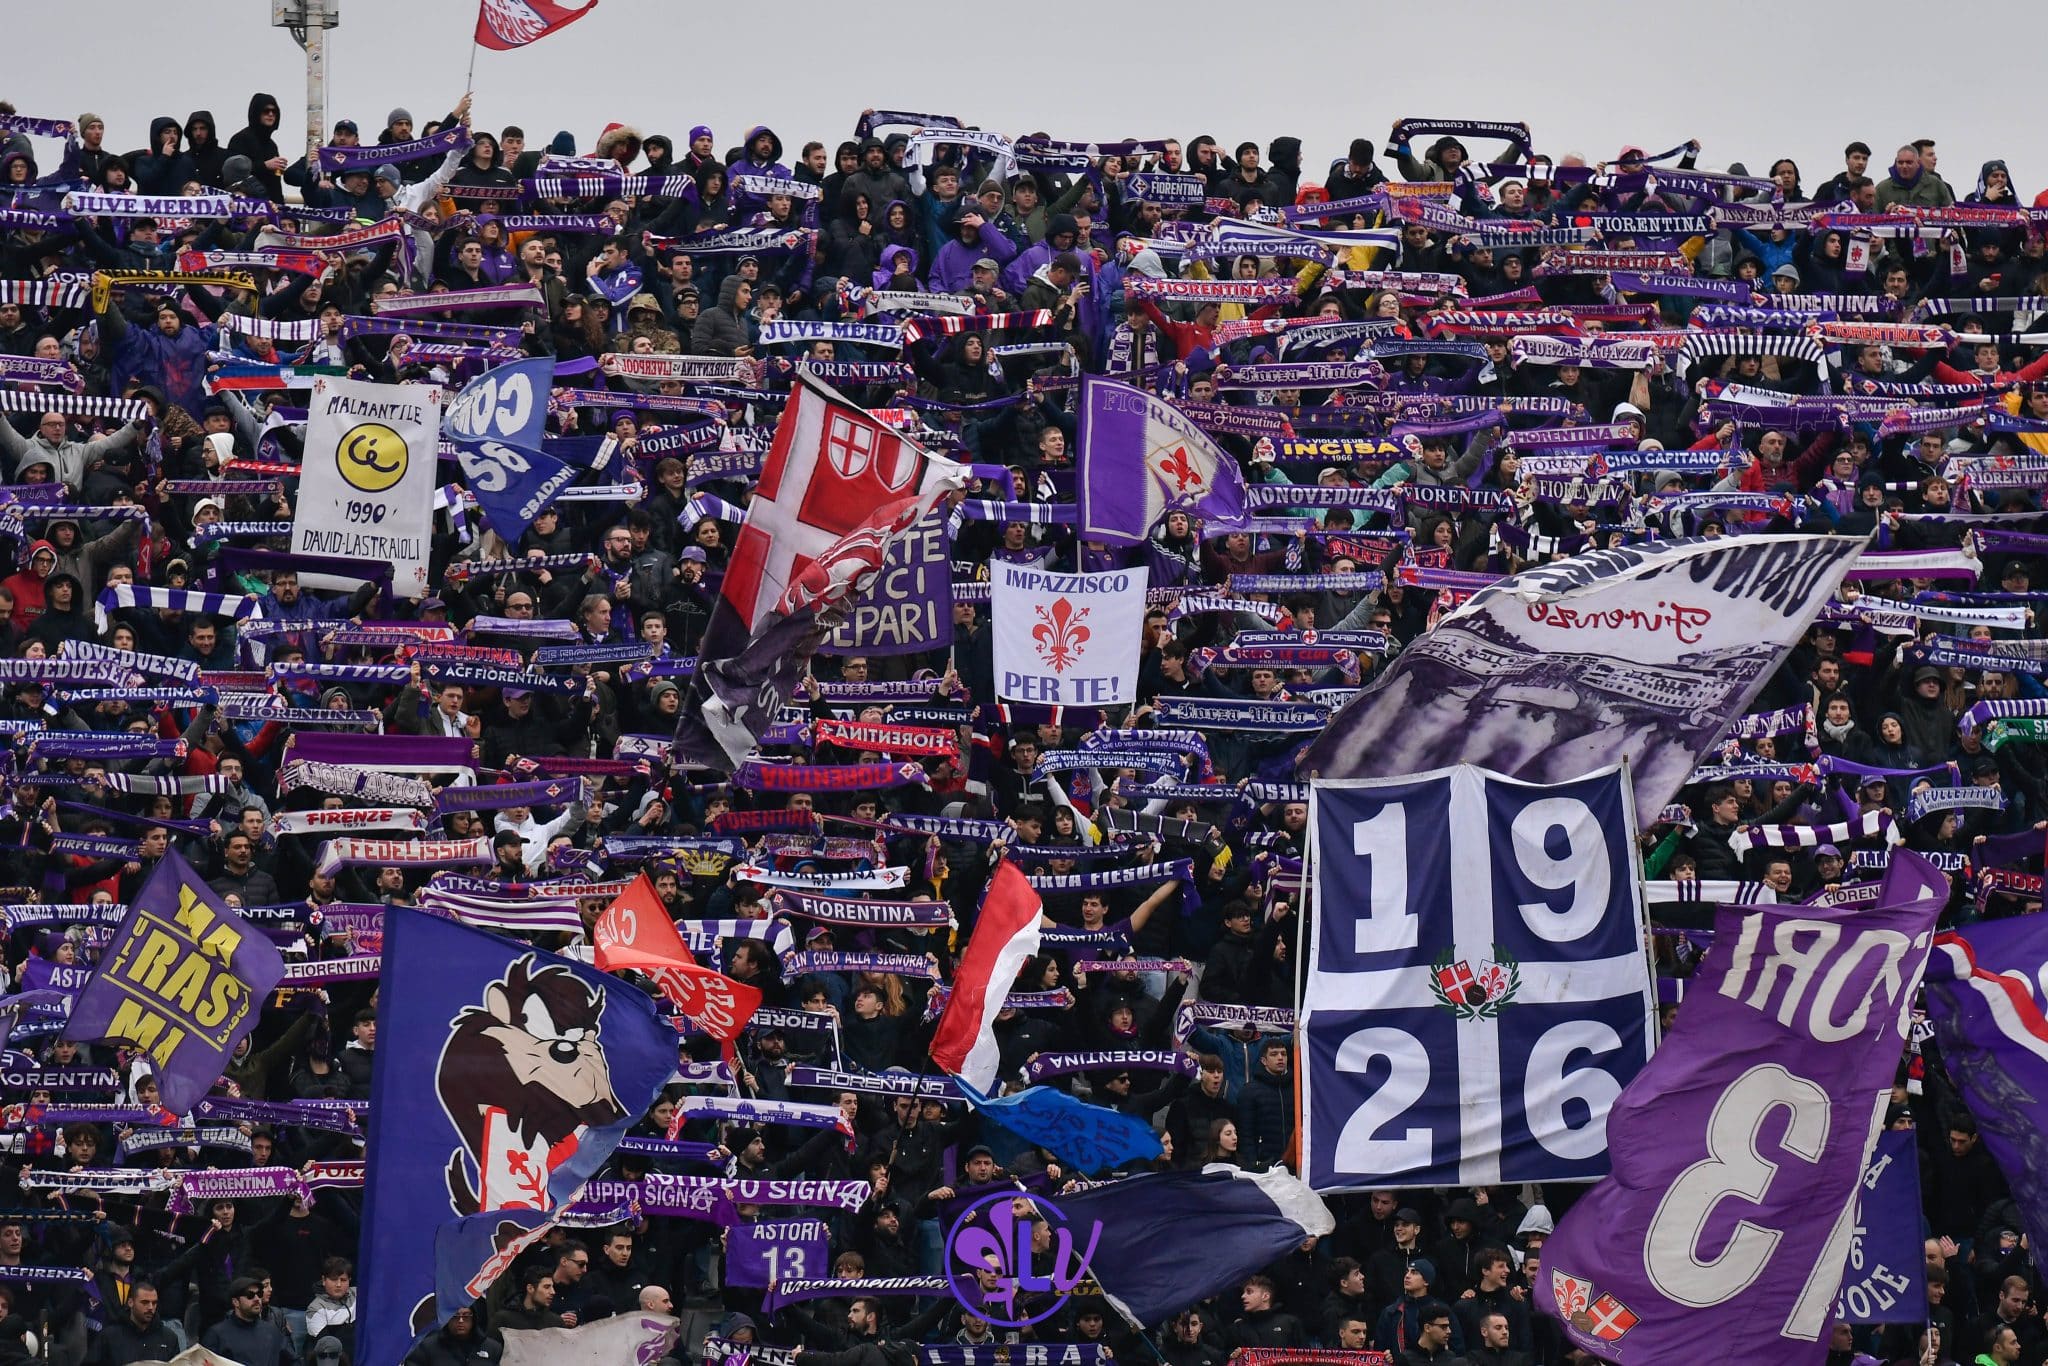 La Fiorentina a du mal, plusieurs supporters du stade huent l&rsquo;équipe en première mi-temps